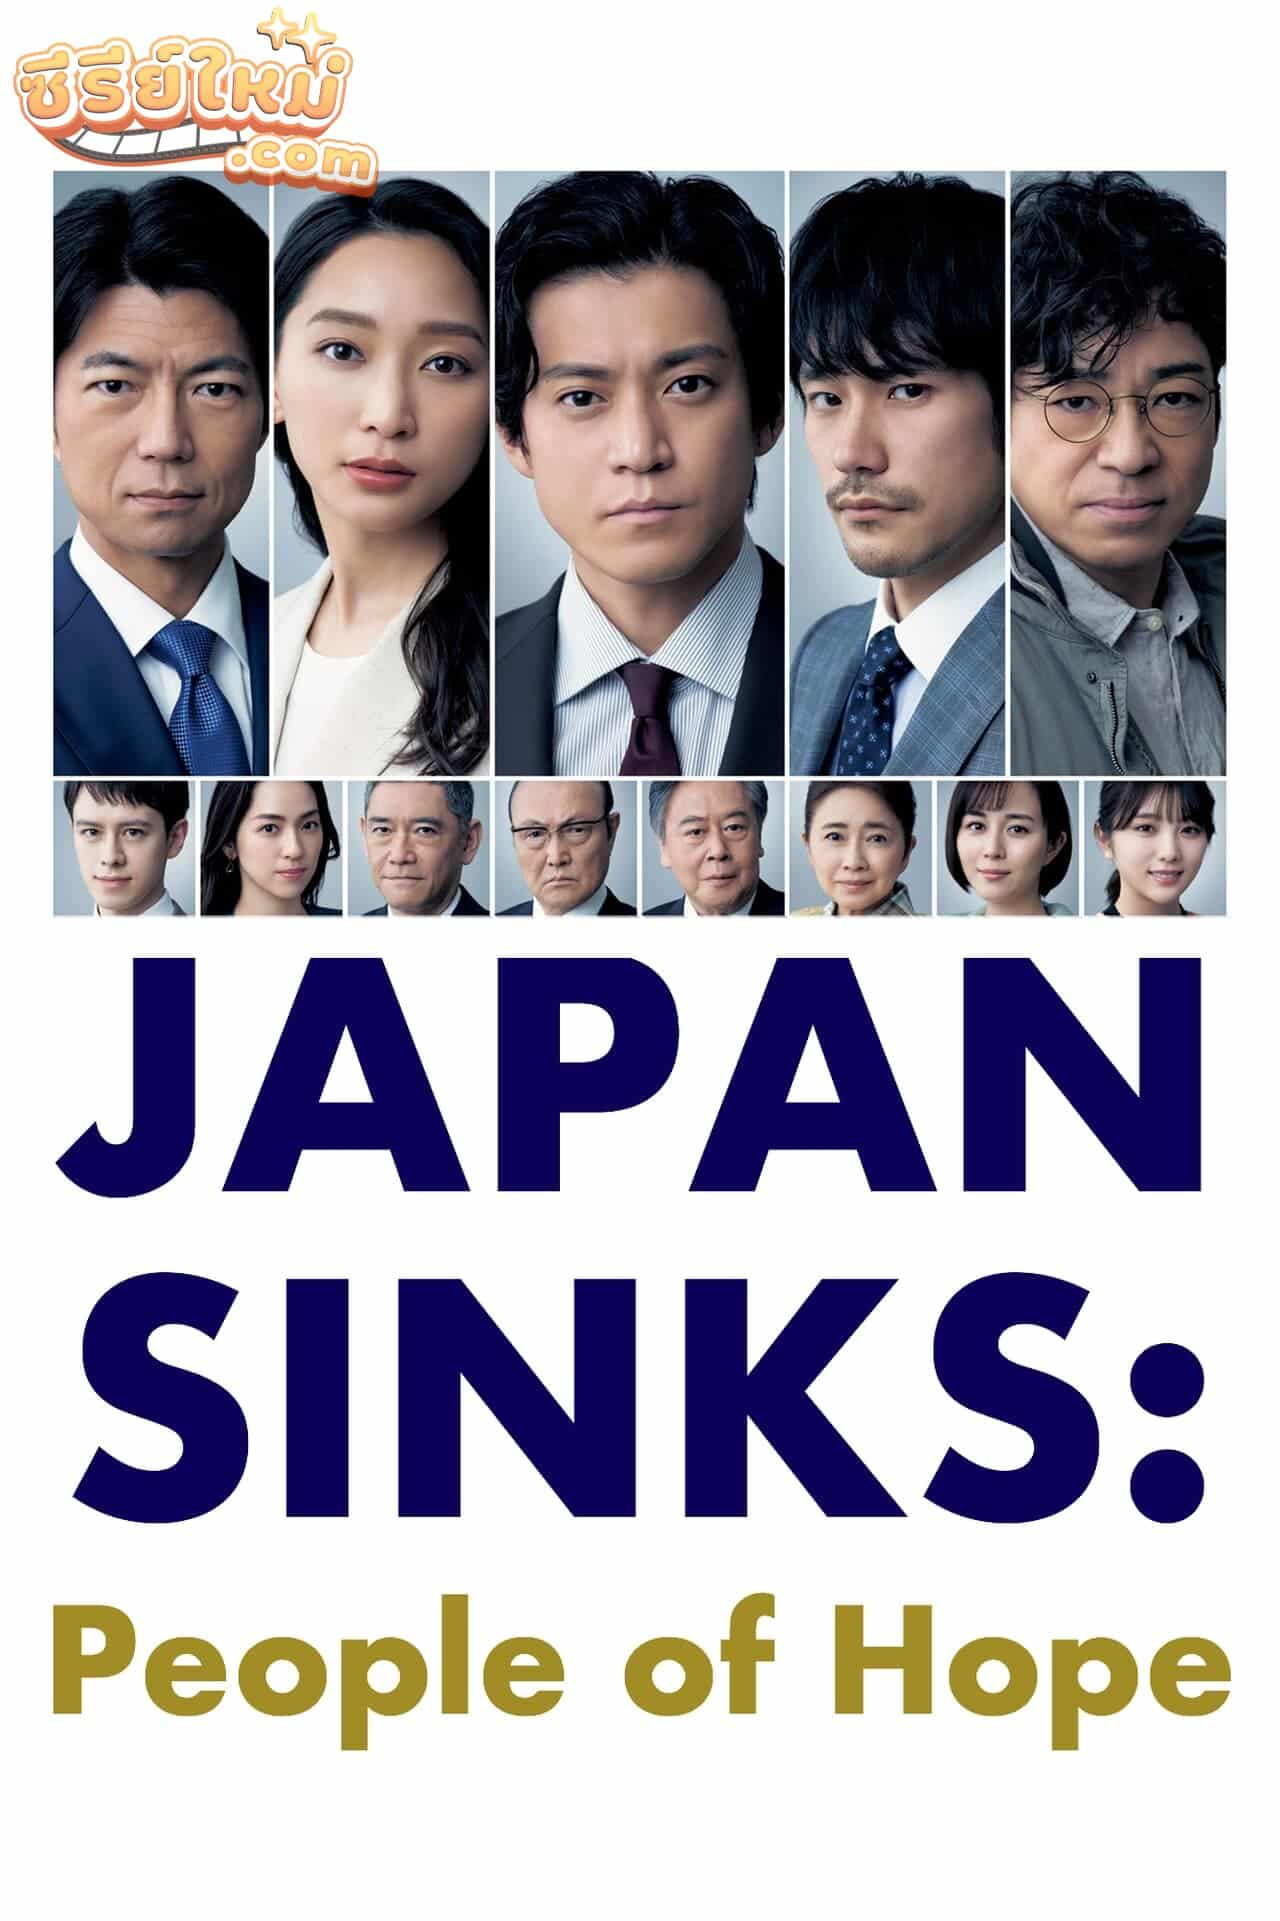 Japan Sinks: People of Hope ญี่ปุ่นวิปโยค 2023 (2021)